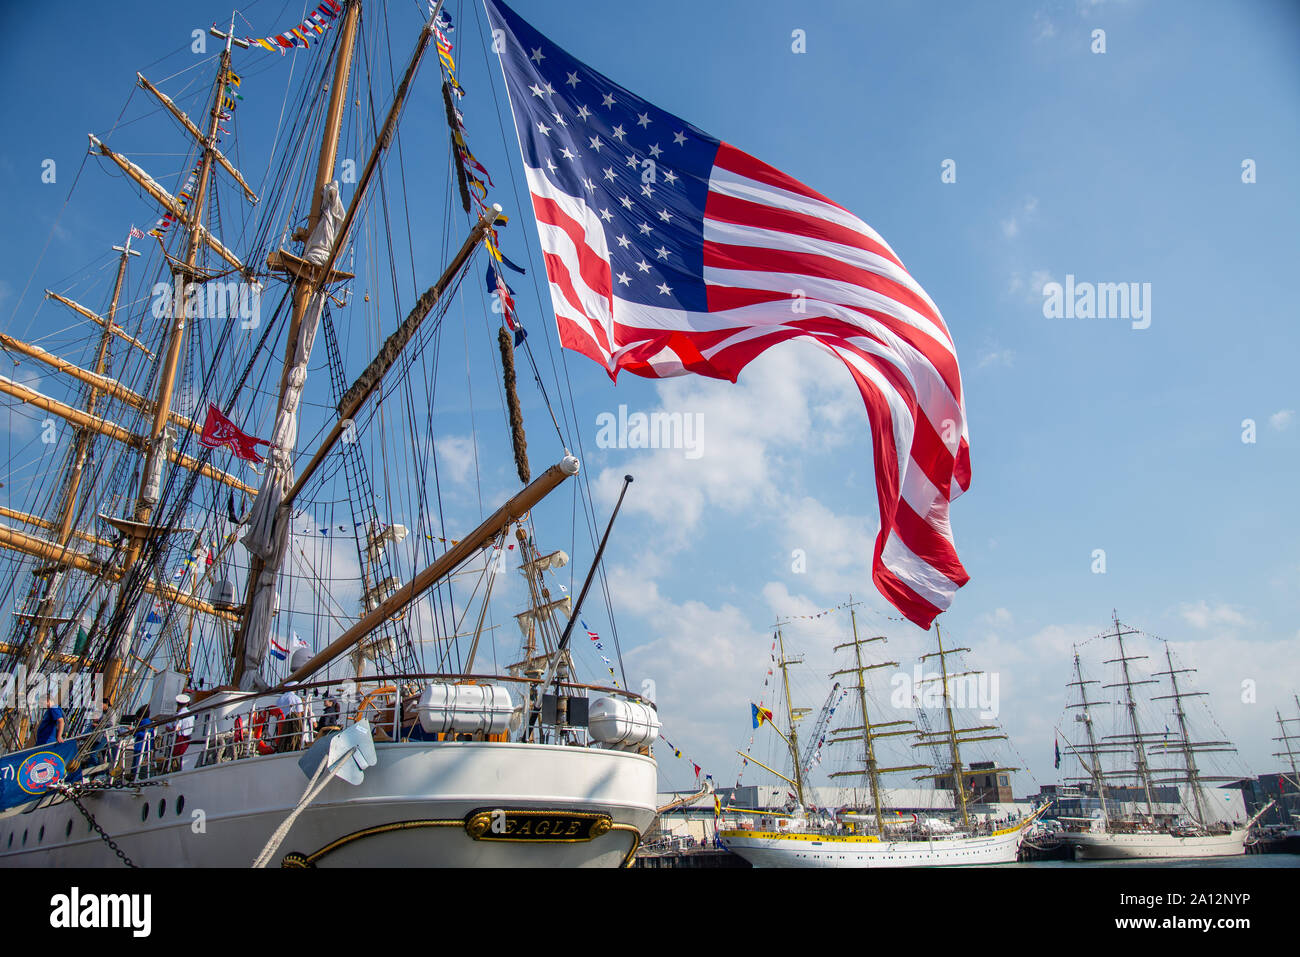 Sail 2019 Scheveningen mit hohen Schiffe im Hafen Stockfoto